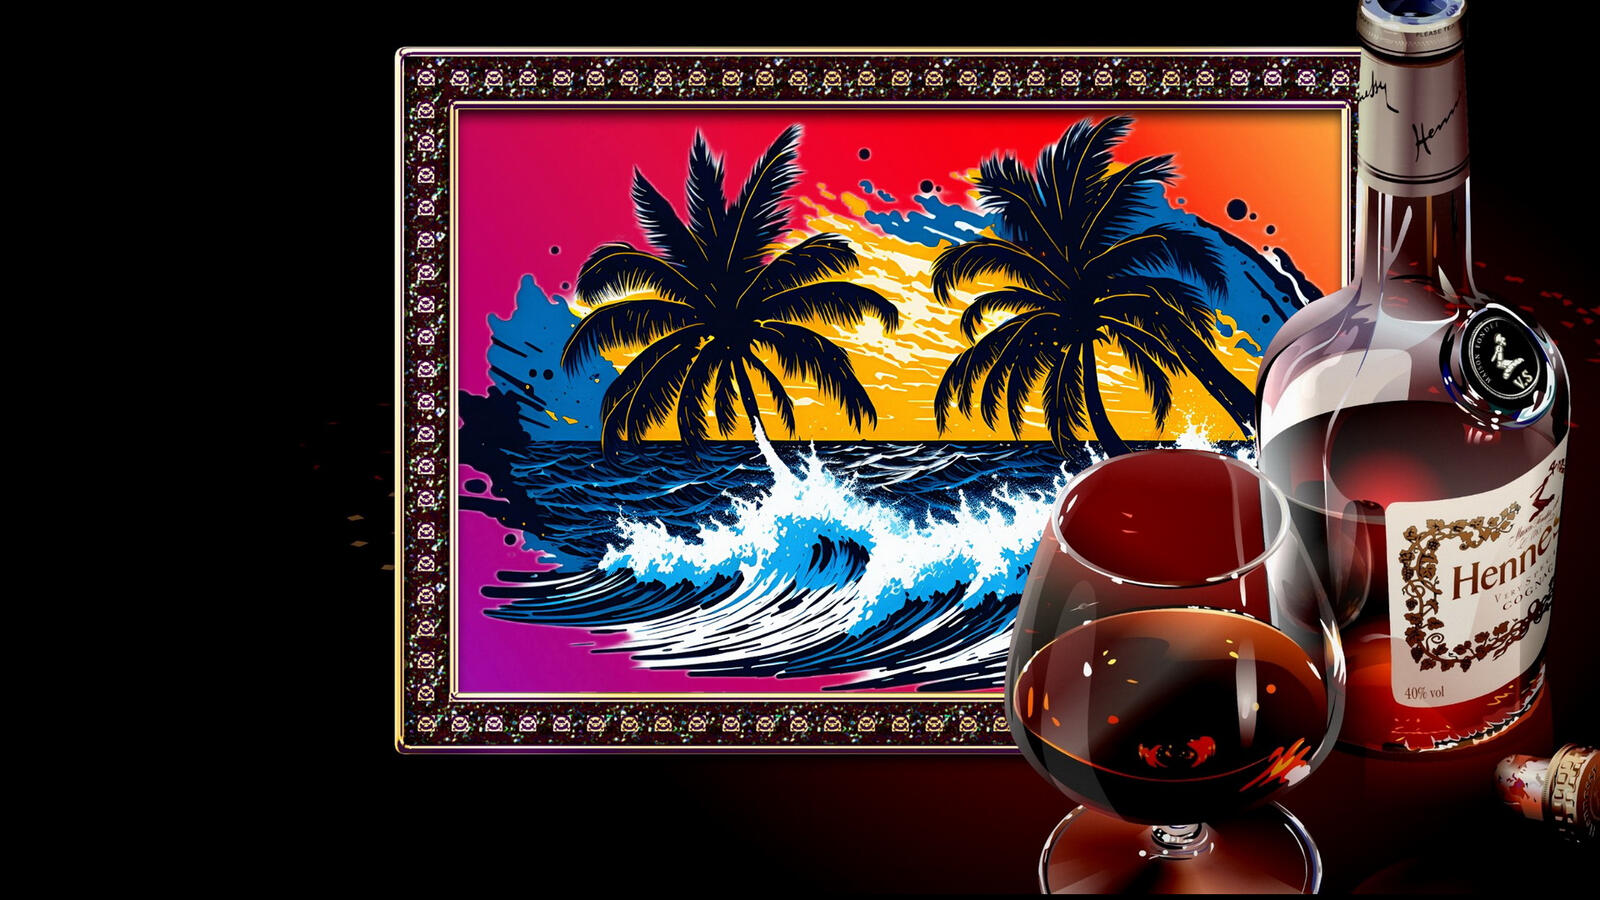 Бесплатное фото Бутылка Hennessy с бокалом коньяка и картина с пальмами на темном фоне